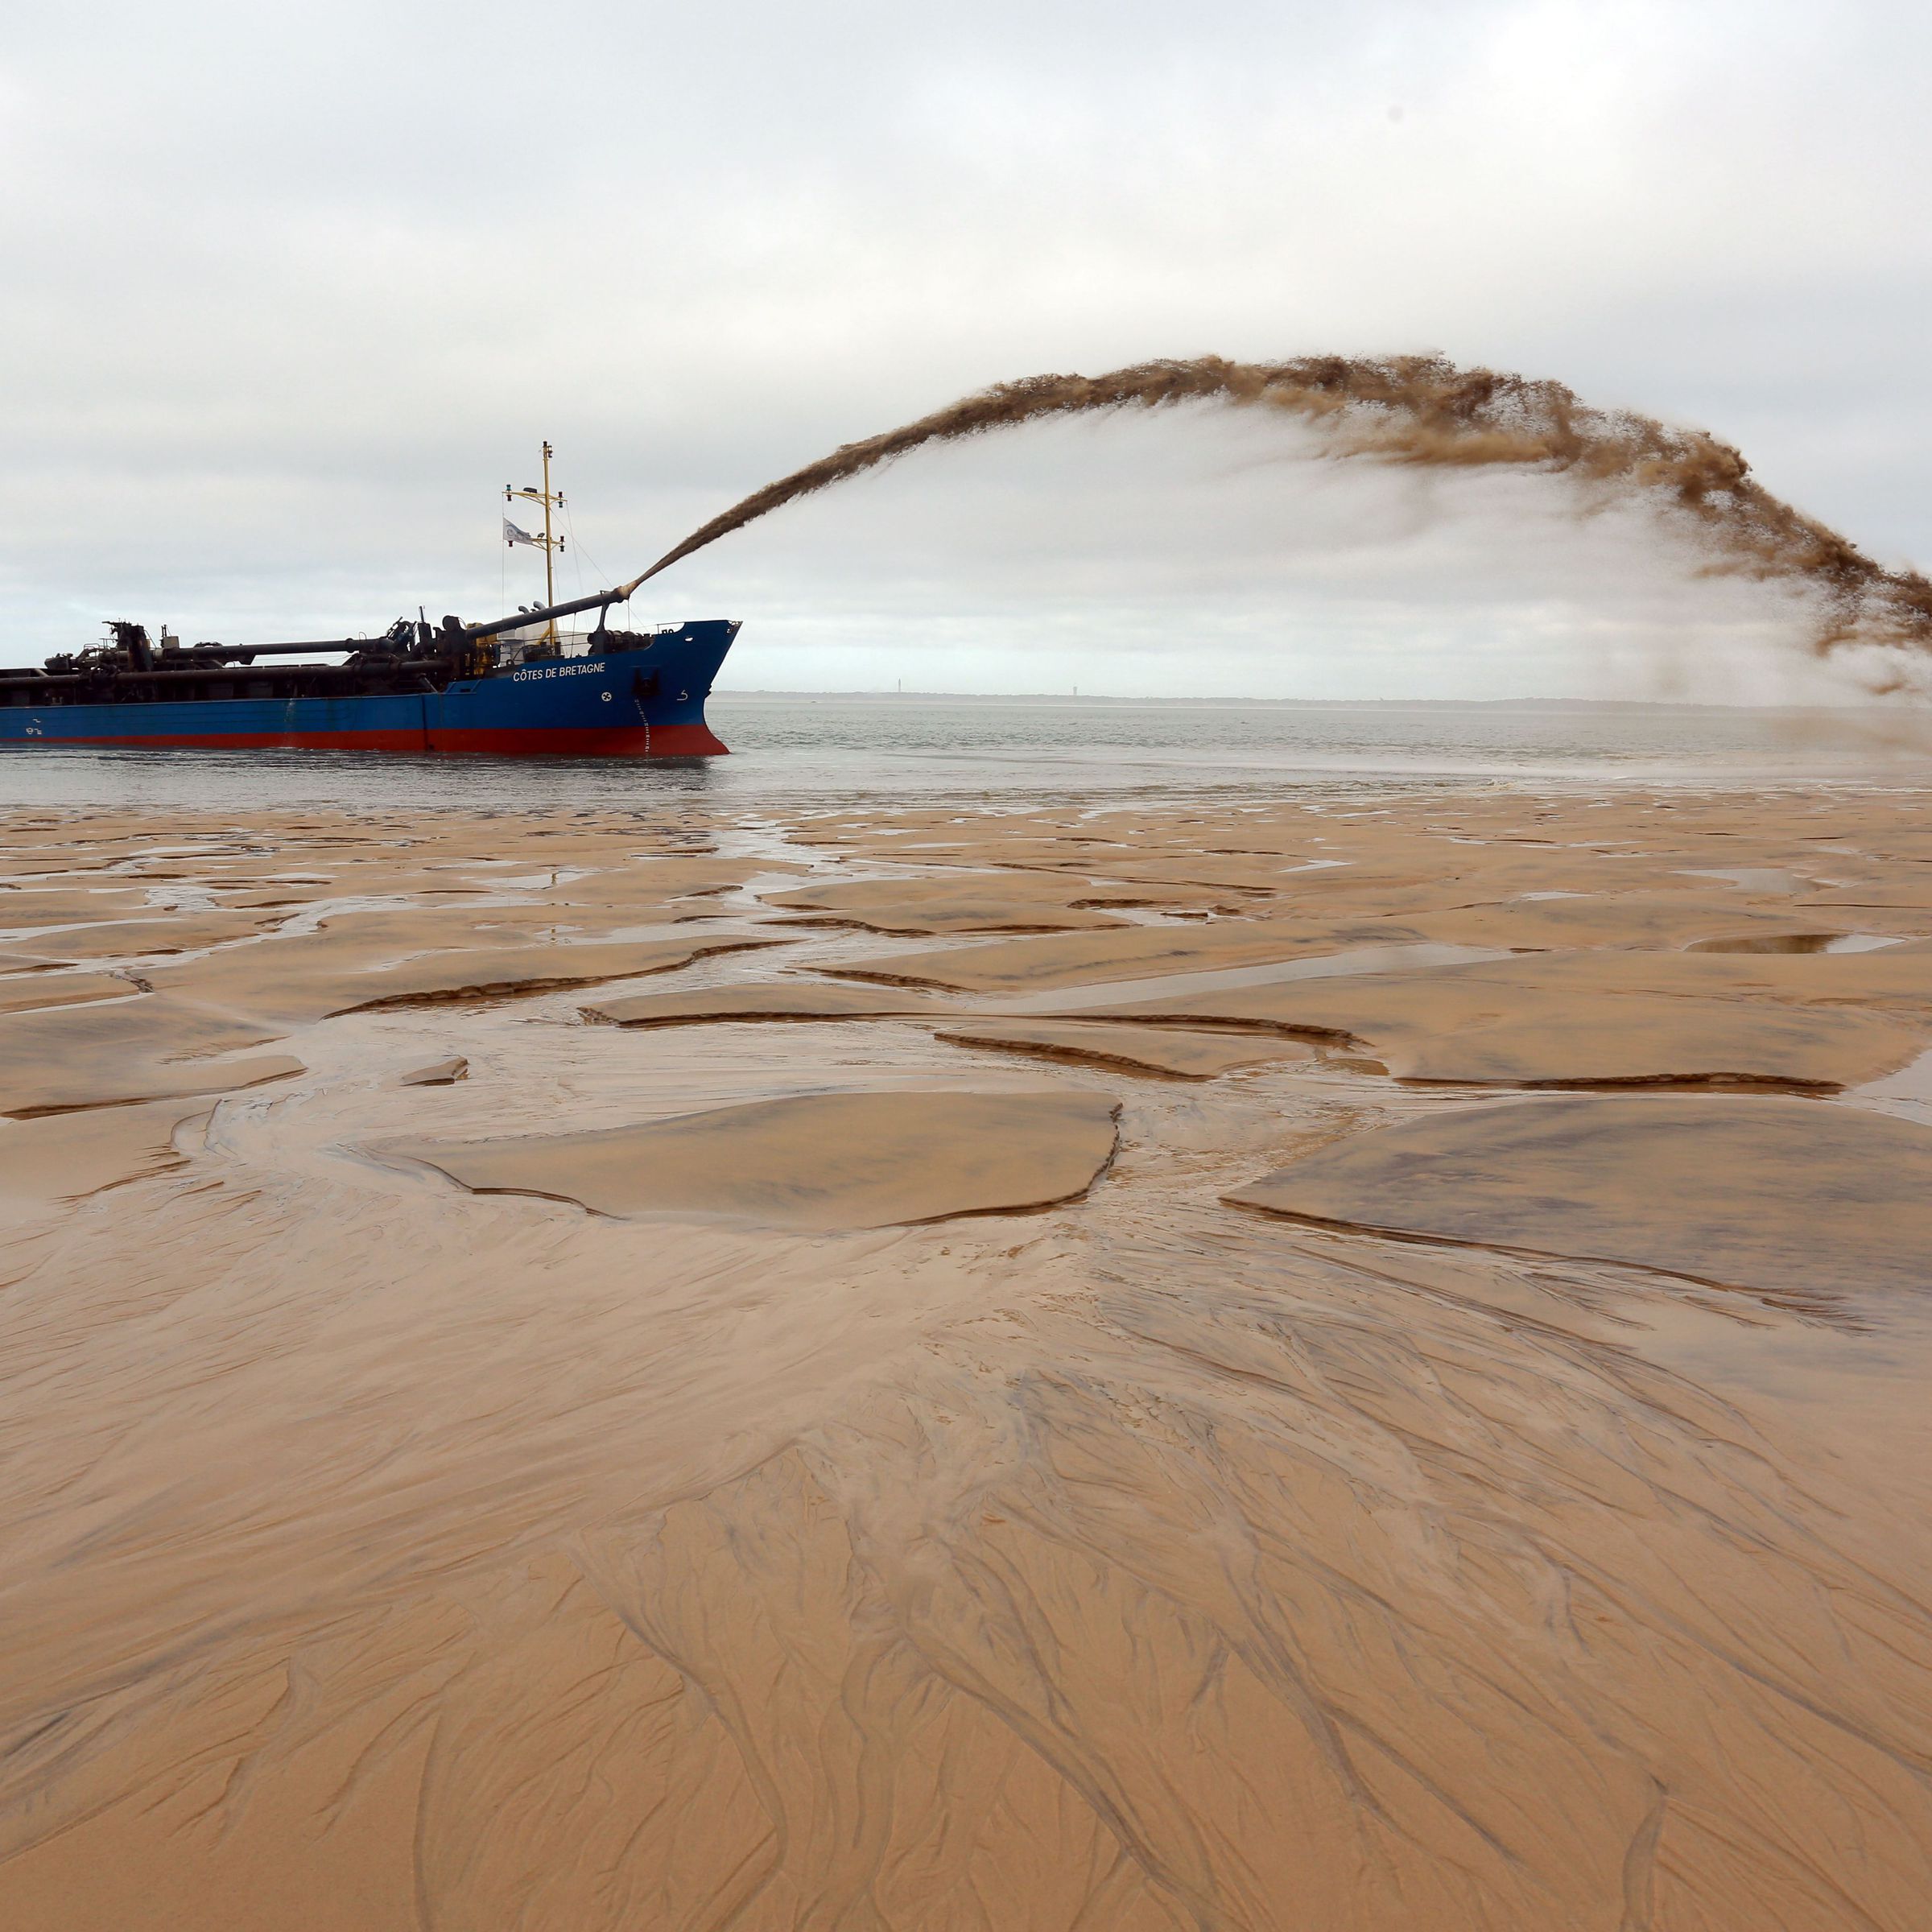 A boat sprays an arc of sandy water onto an empty beach.